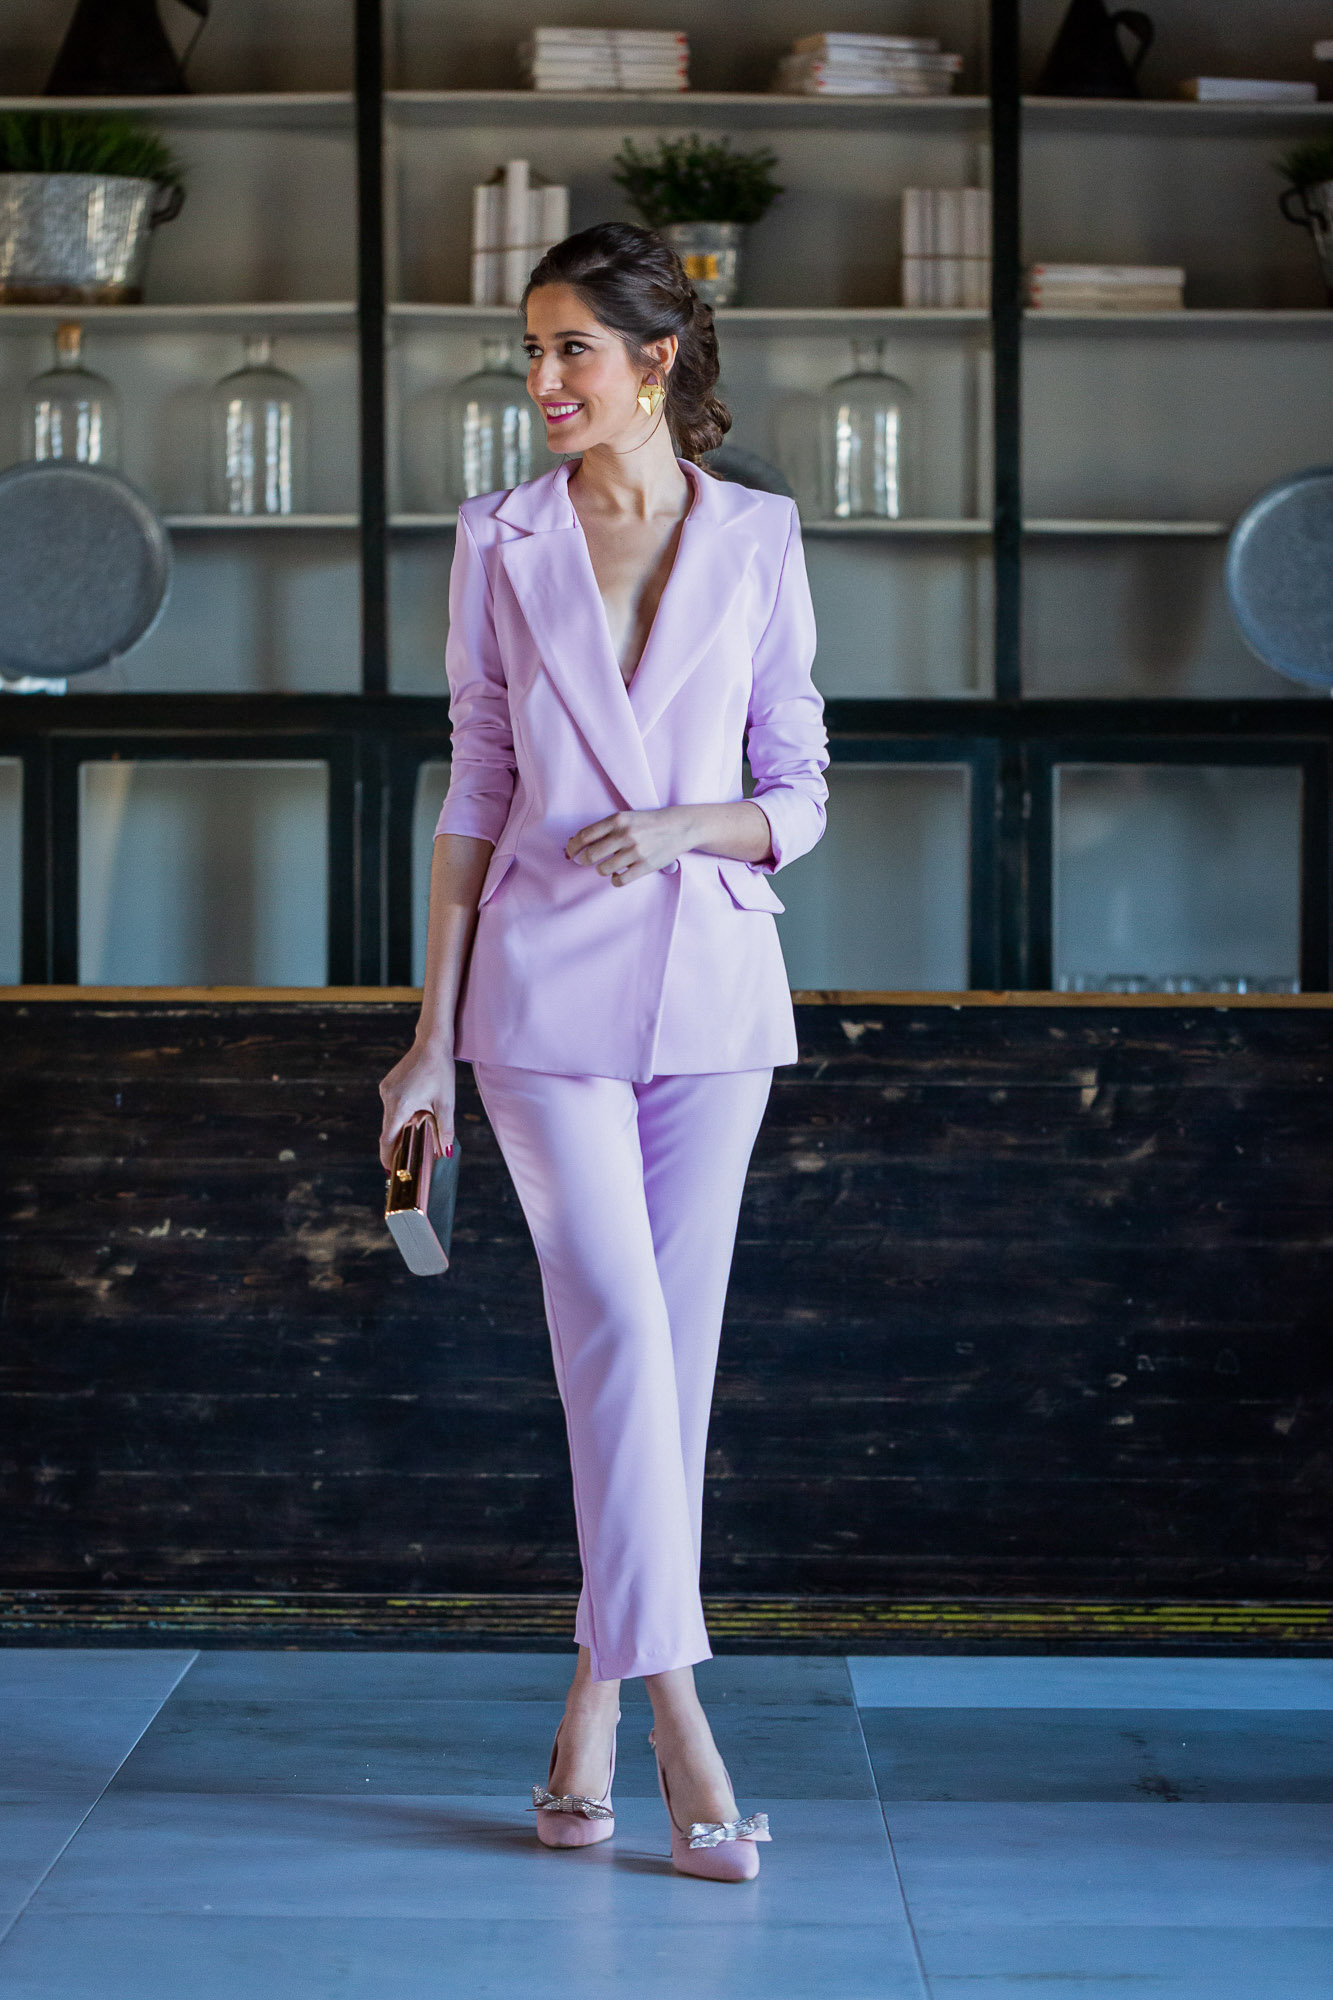 Look invitada boda 2019 traje chaqueta rosa tocado